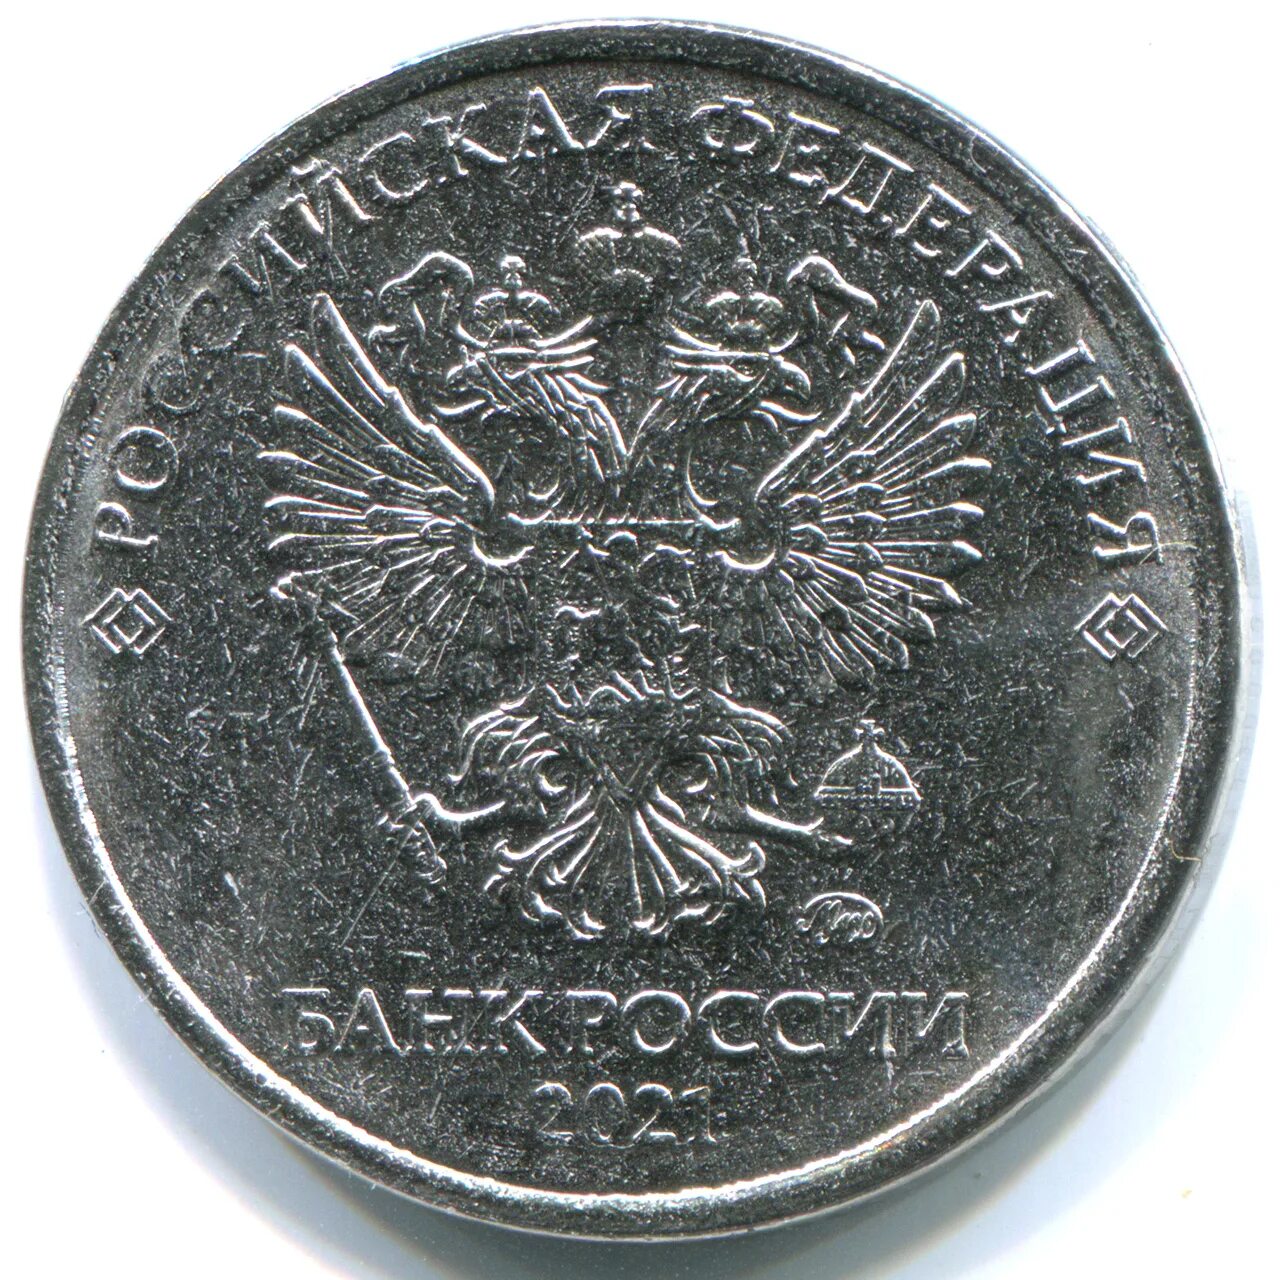 2 рубля цена. Брак монеты 2 рубля 2021. Монета 2 рубля 2021. Браки монет 2021 года 2 рубля. Монета 50 рублей 2021.